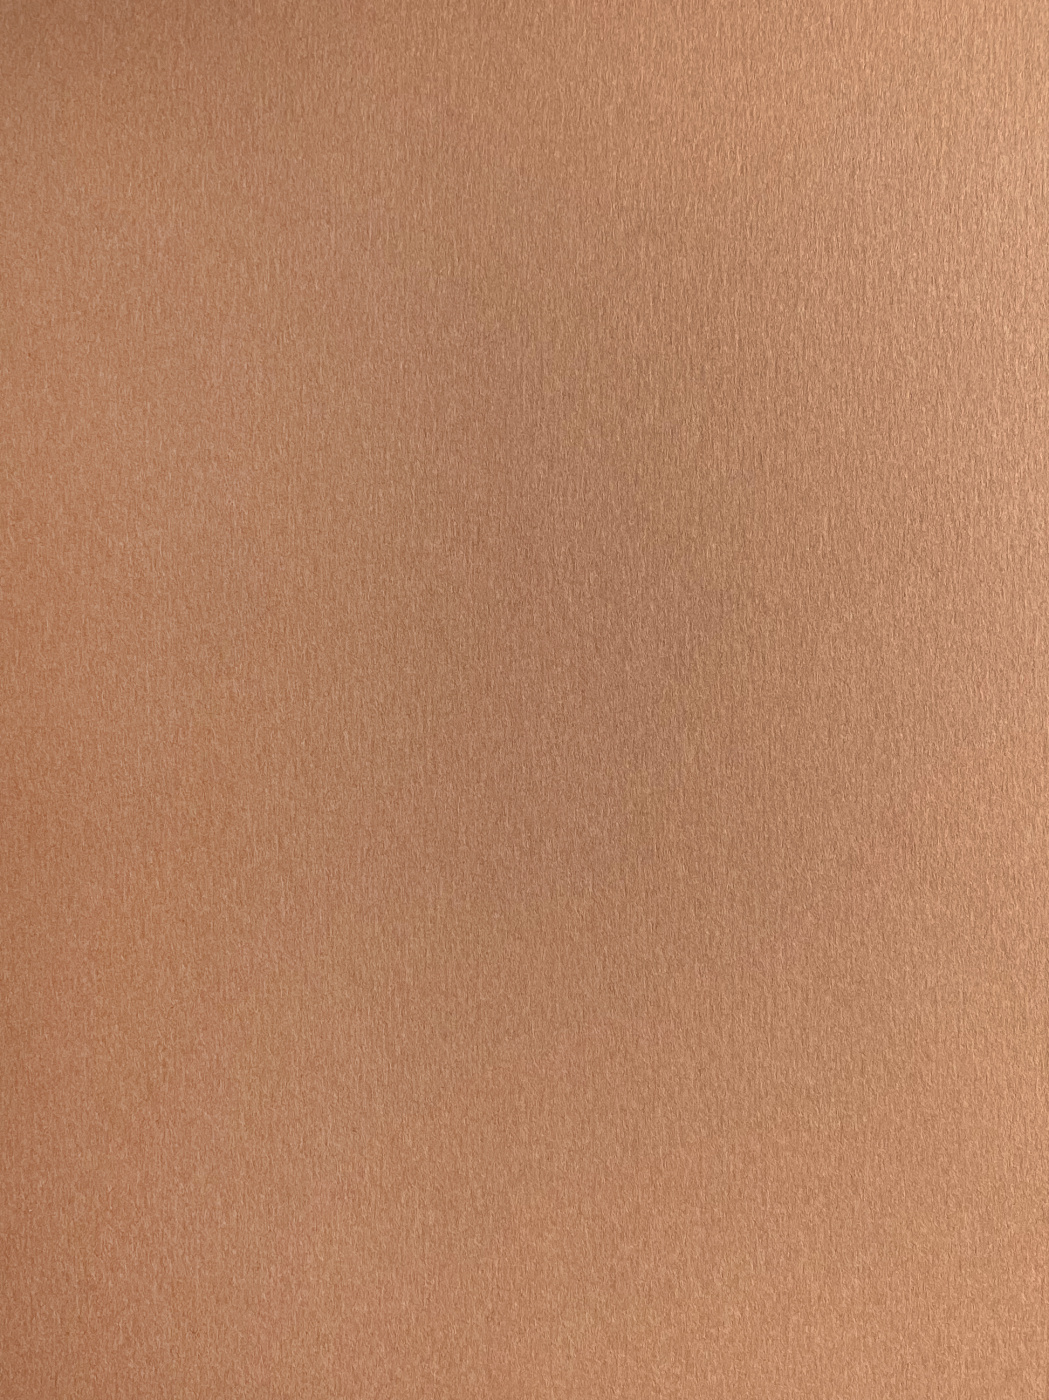 Бумага для пастели Малевичъ GrafArt А3 270 г, коричневая светлая ная бумага для оригами и аппликаций двусторонняя 10 ов 21х21 100 листов